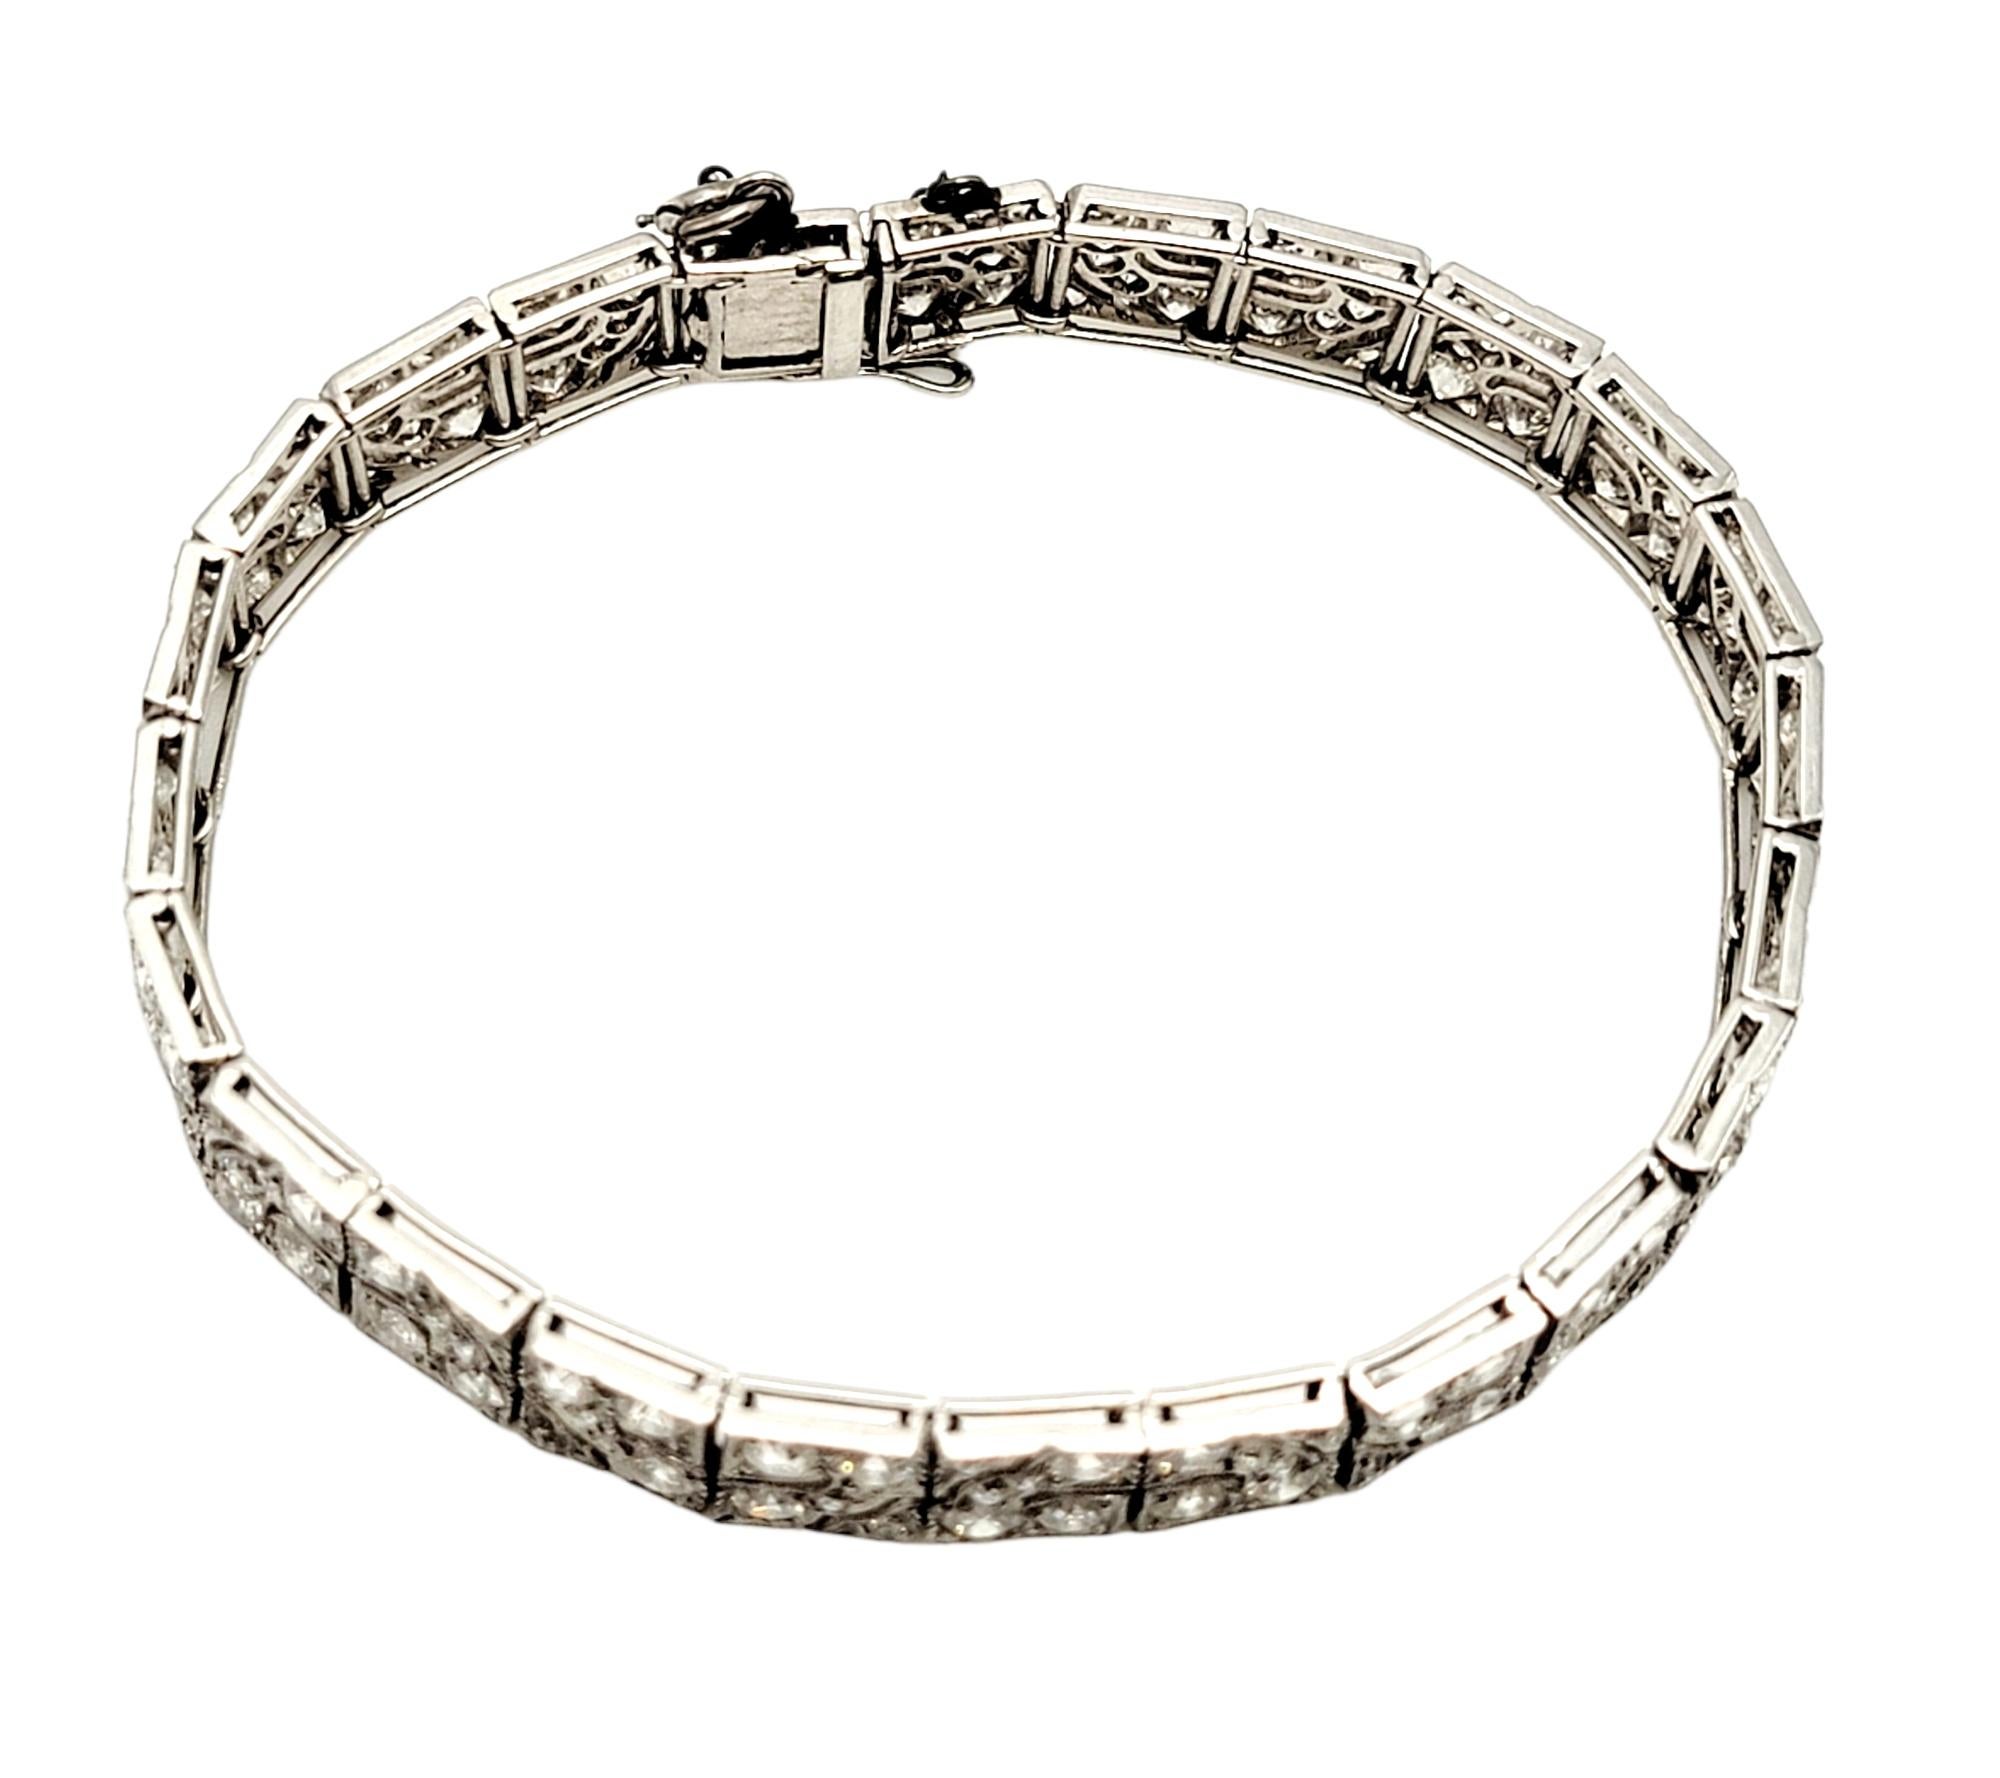 Women's Art Deco Diamond Bracelet 8.40 Carats Old European Cut Diamonds Geometric Design